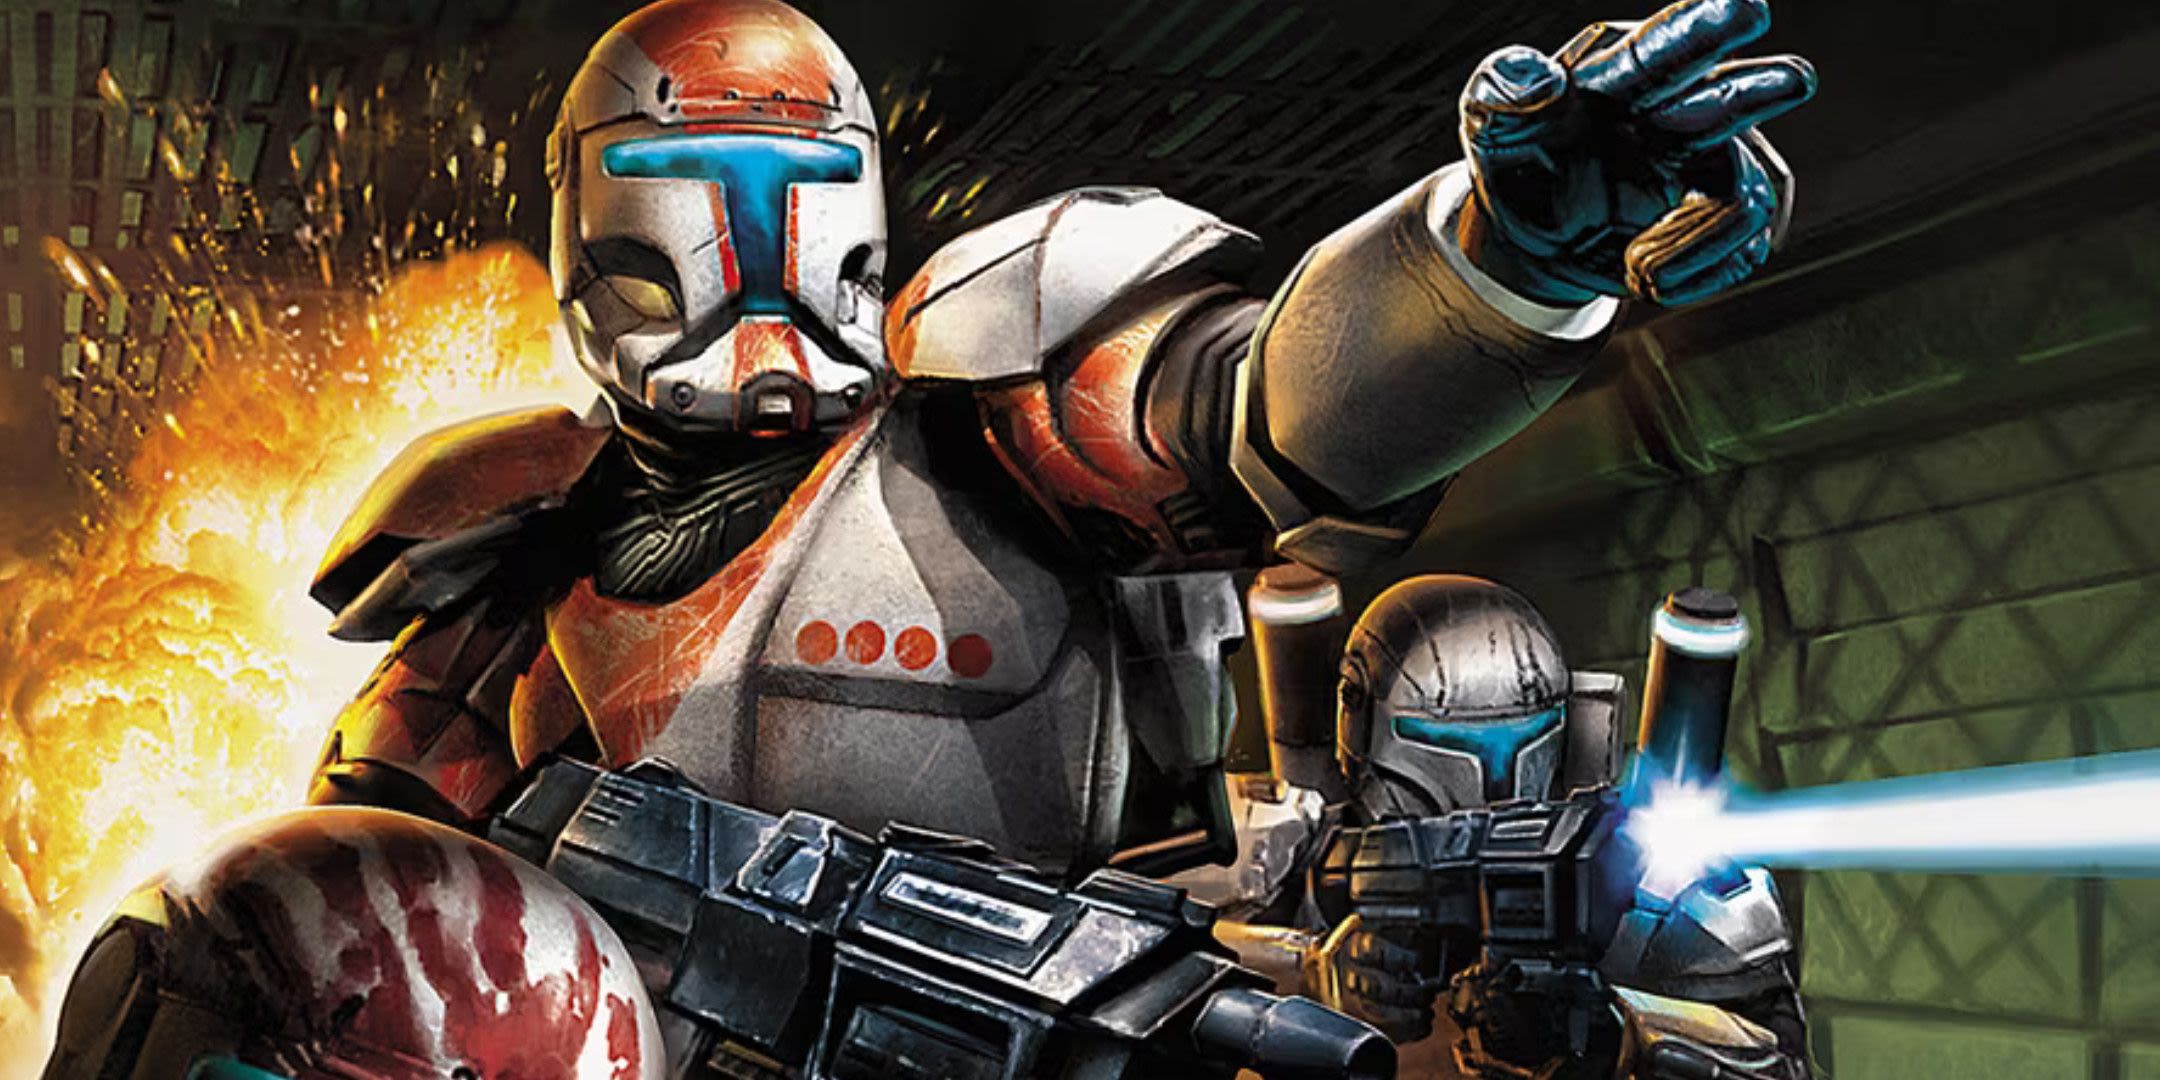 Star Wars Bad Batch Finale Just Killed Fan-Favorite Republic Commando Character